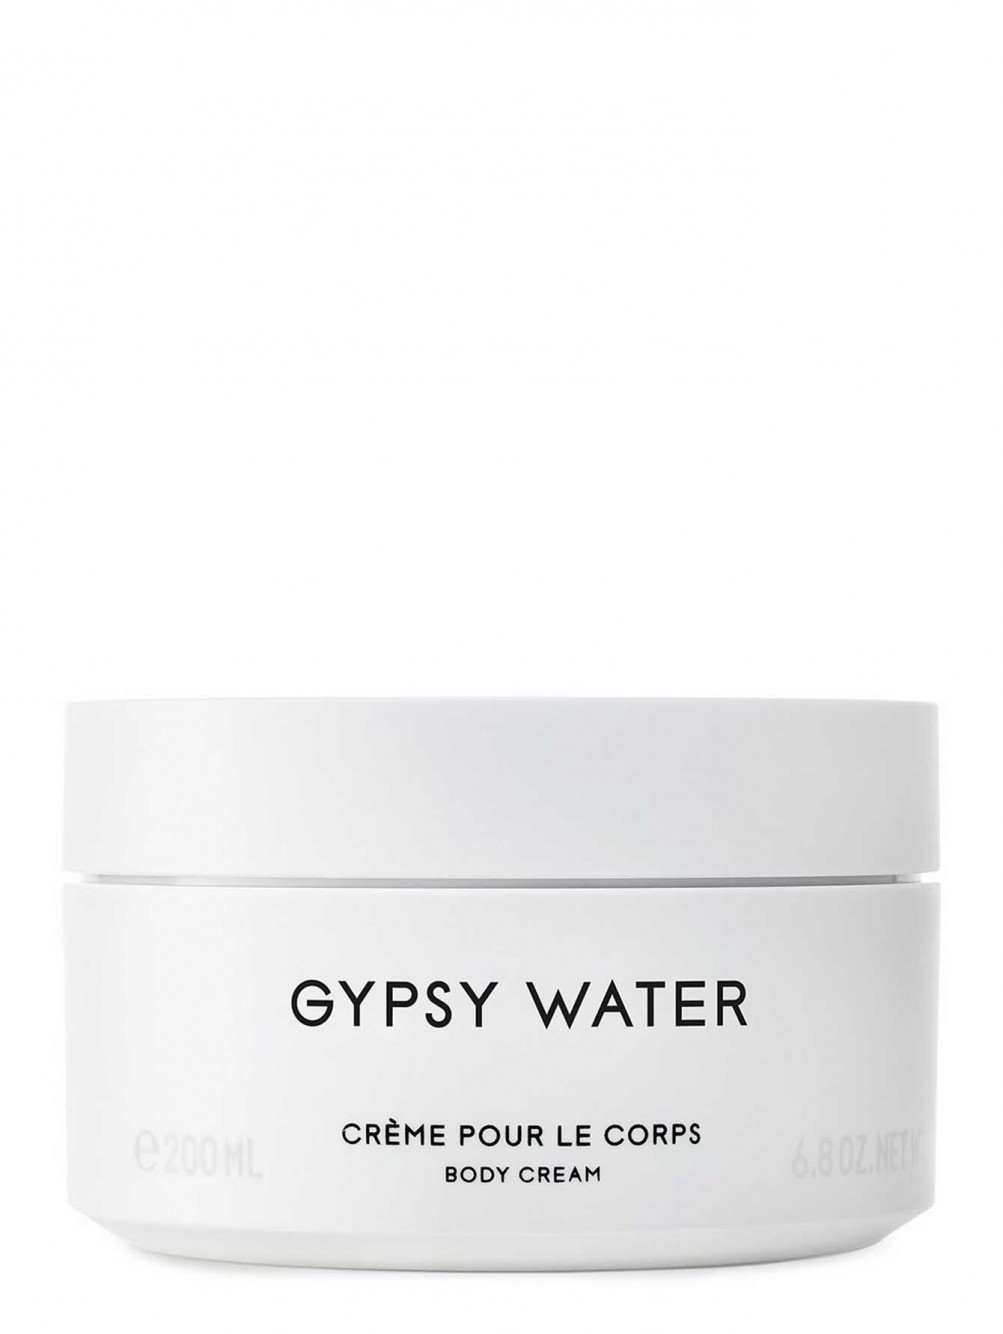 Крем для тела Gypsy Water, 200 мл - Общий вид